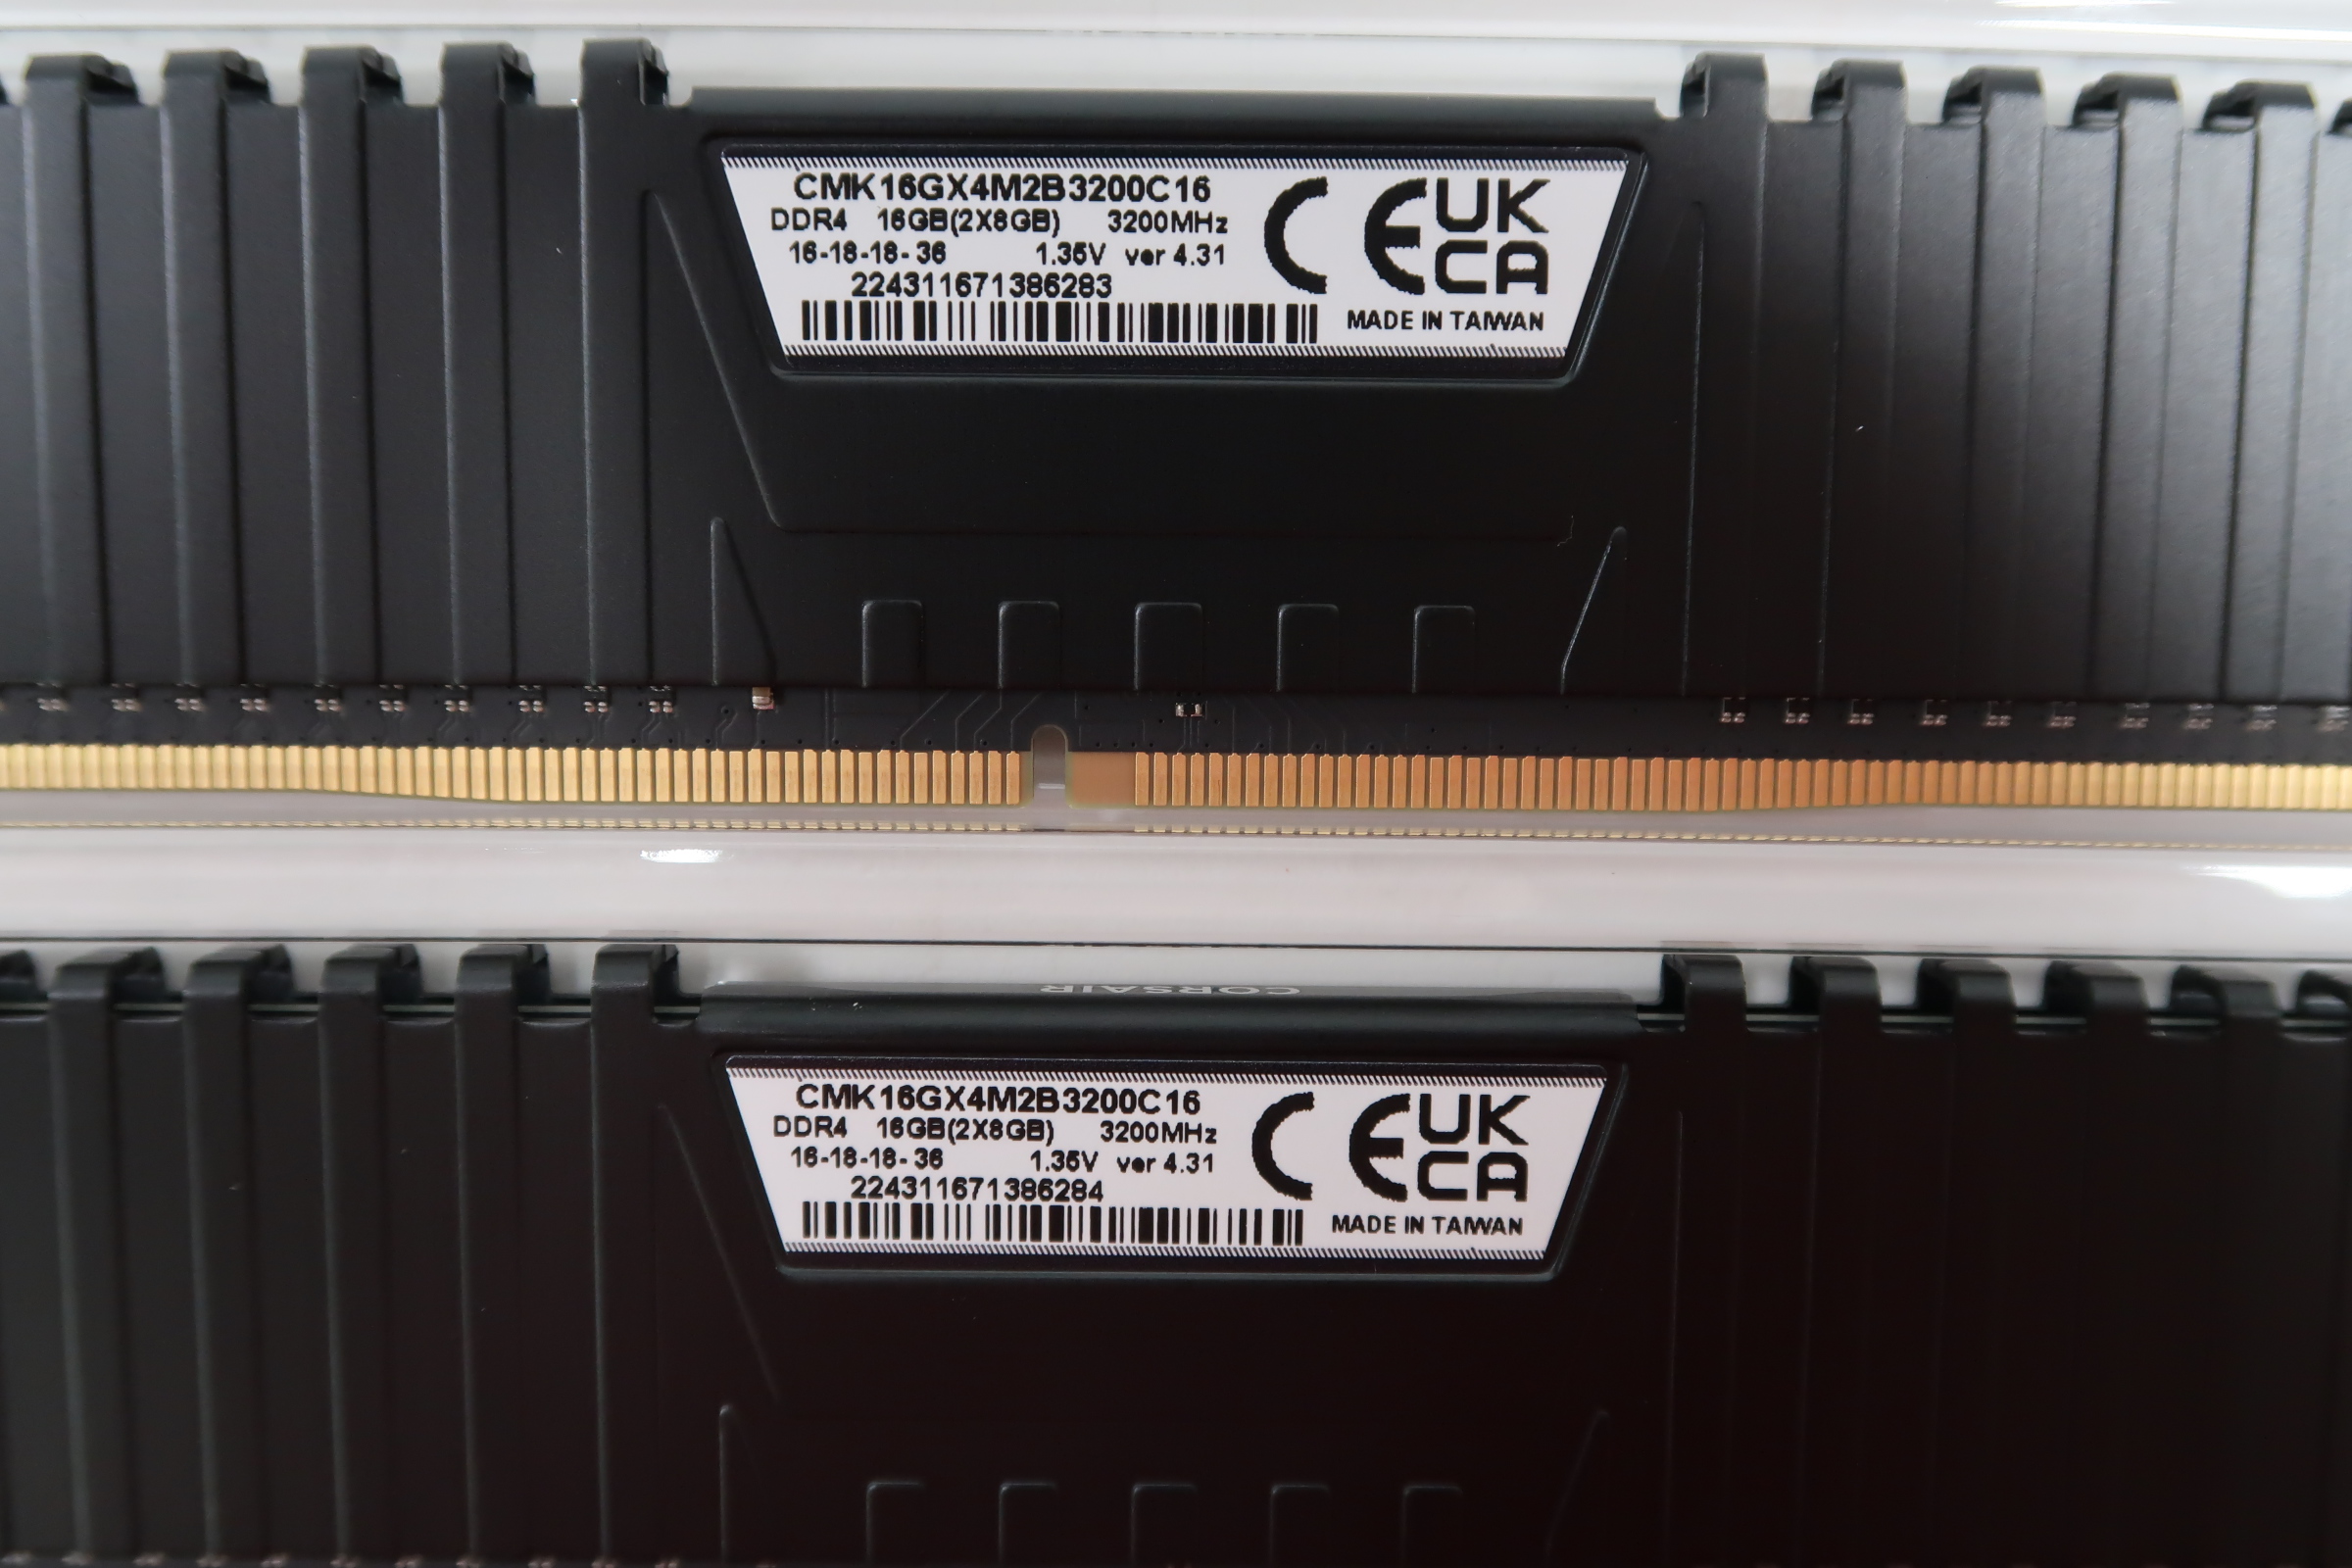 Corsair Vengeance LPX 16GB DDR4 3200 MHz - Memoria RAM